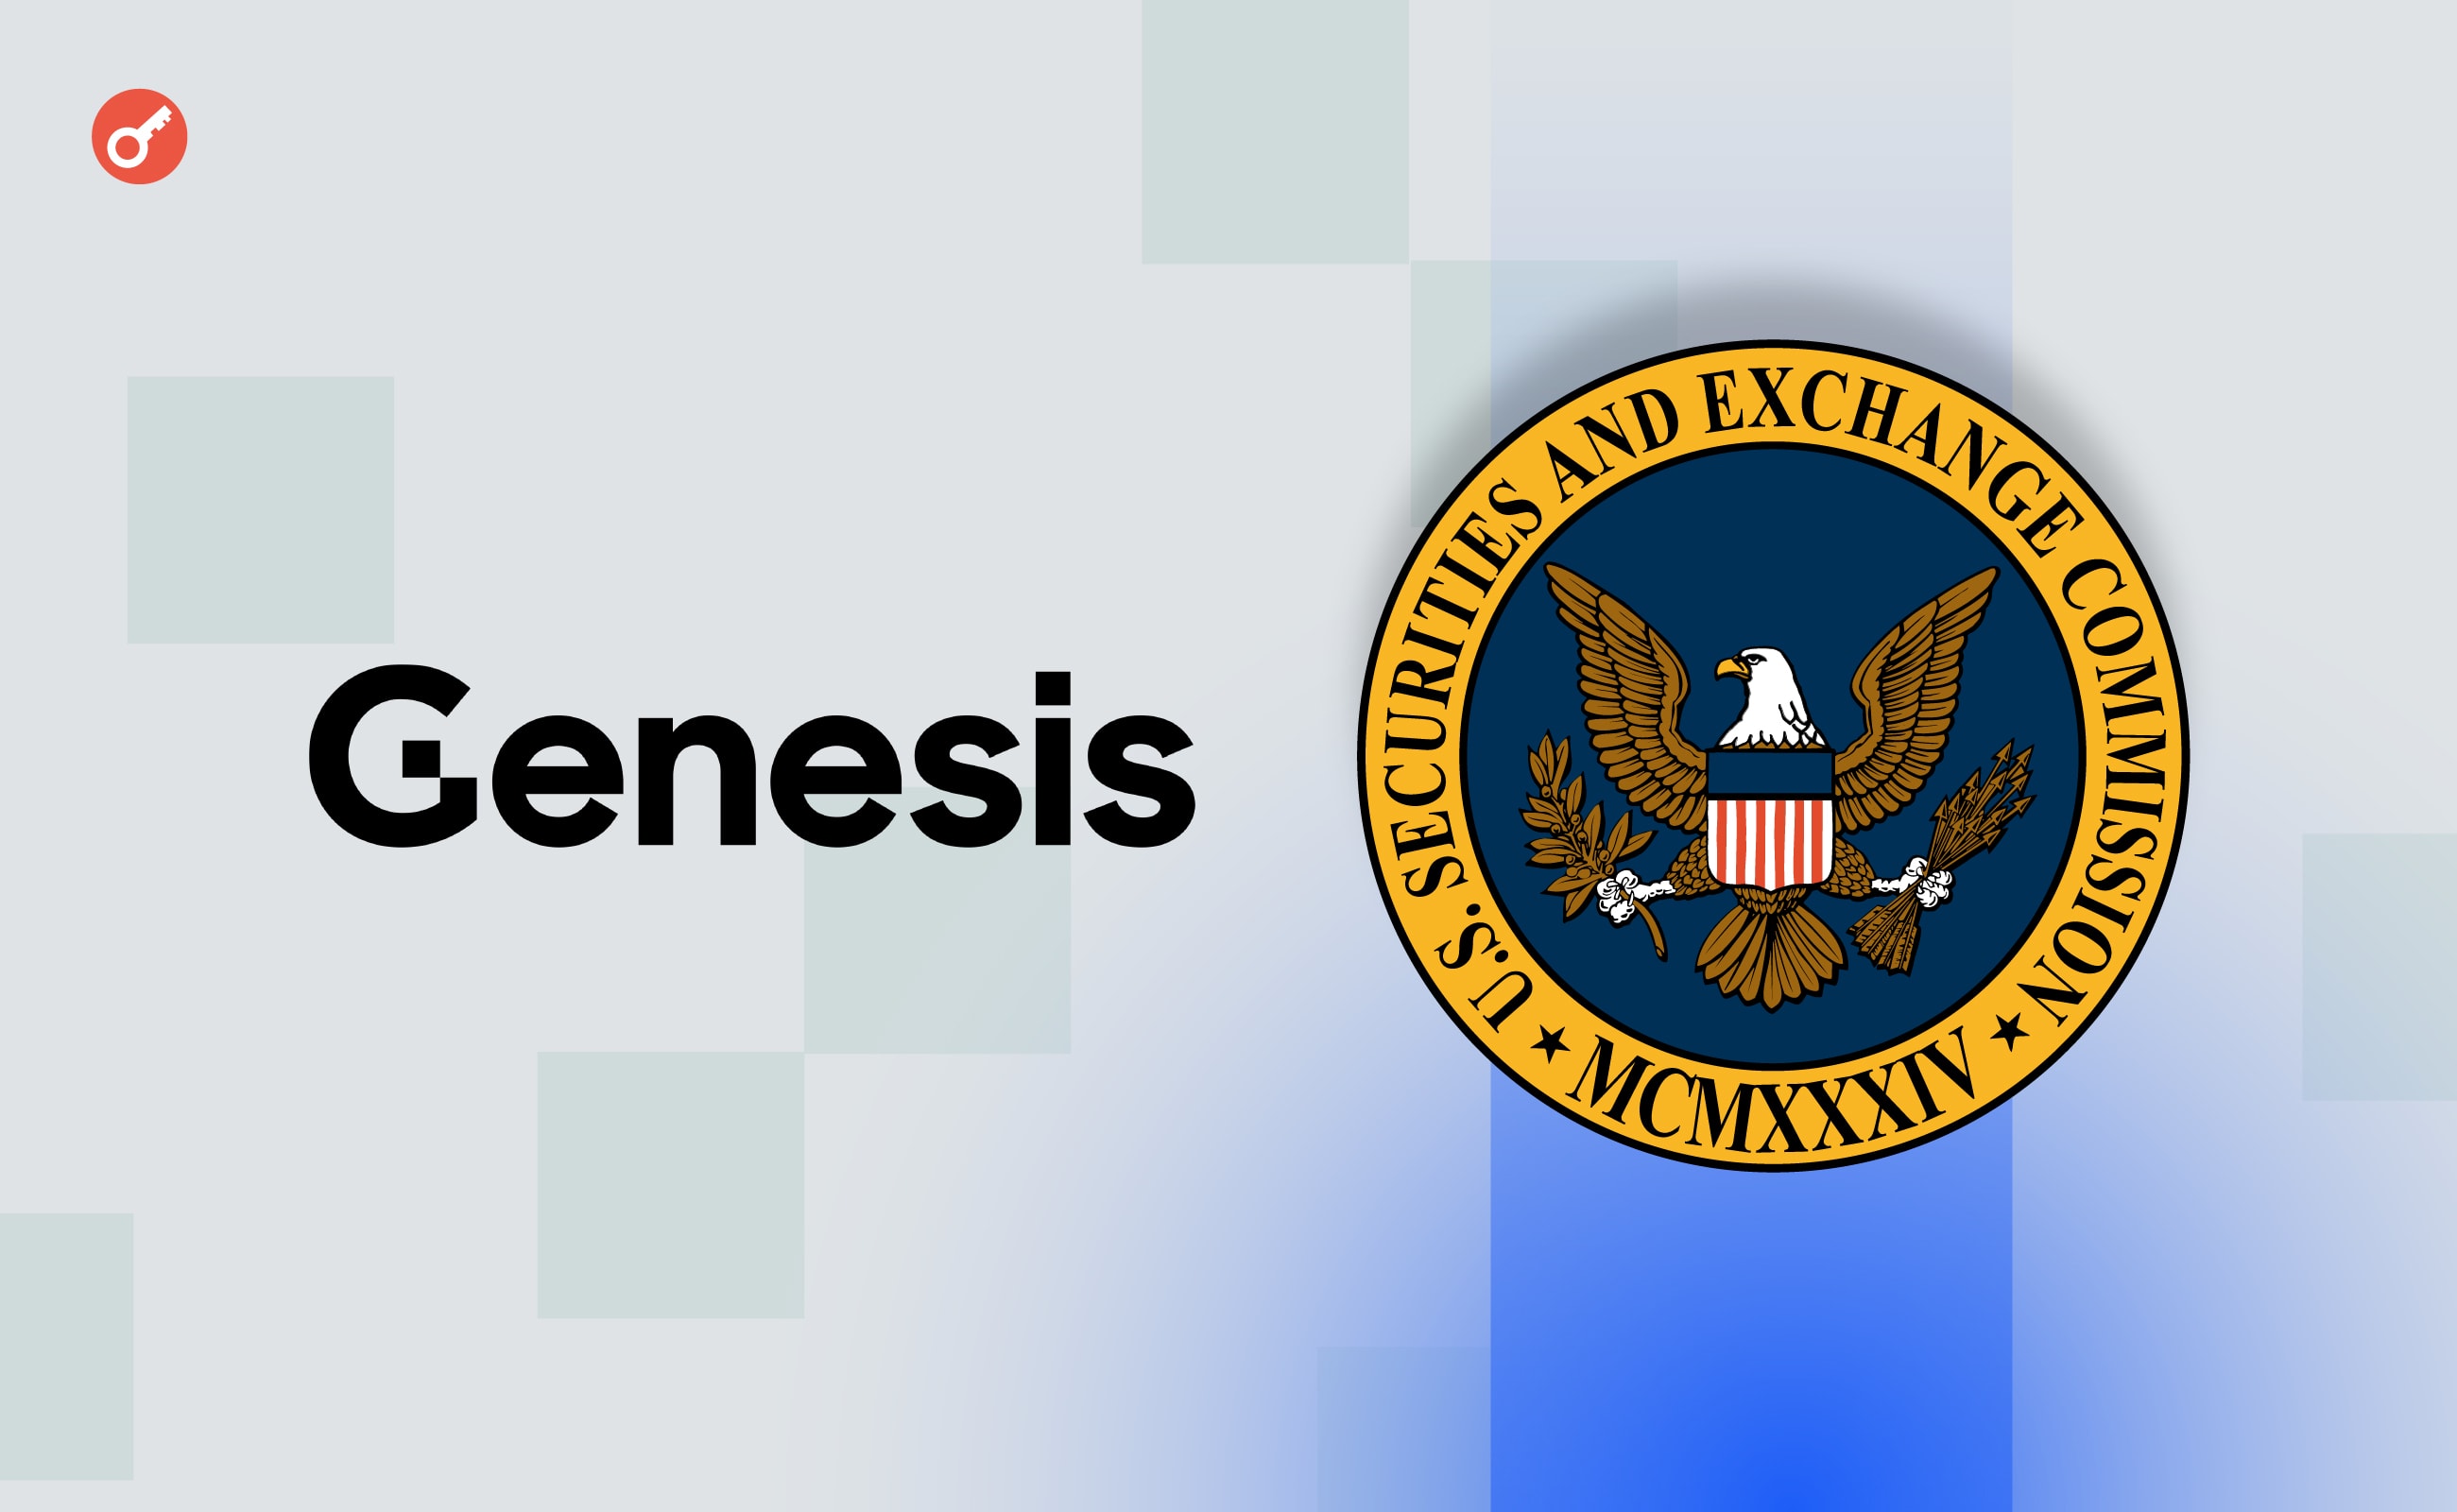 Genesis пошла на сделку с SEC. Компания выплатит $21 млн штрафа. Заглавный коллаж новости.